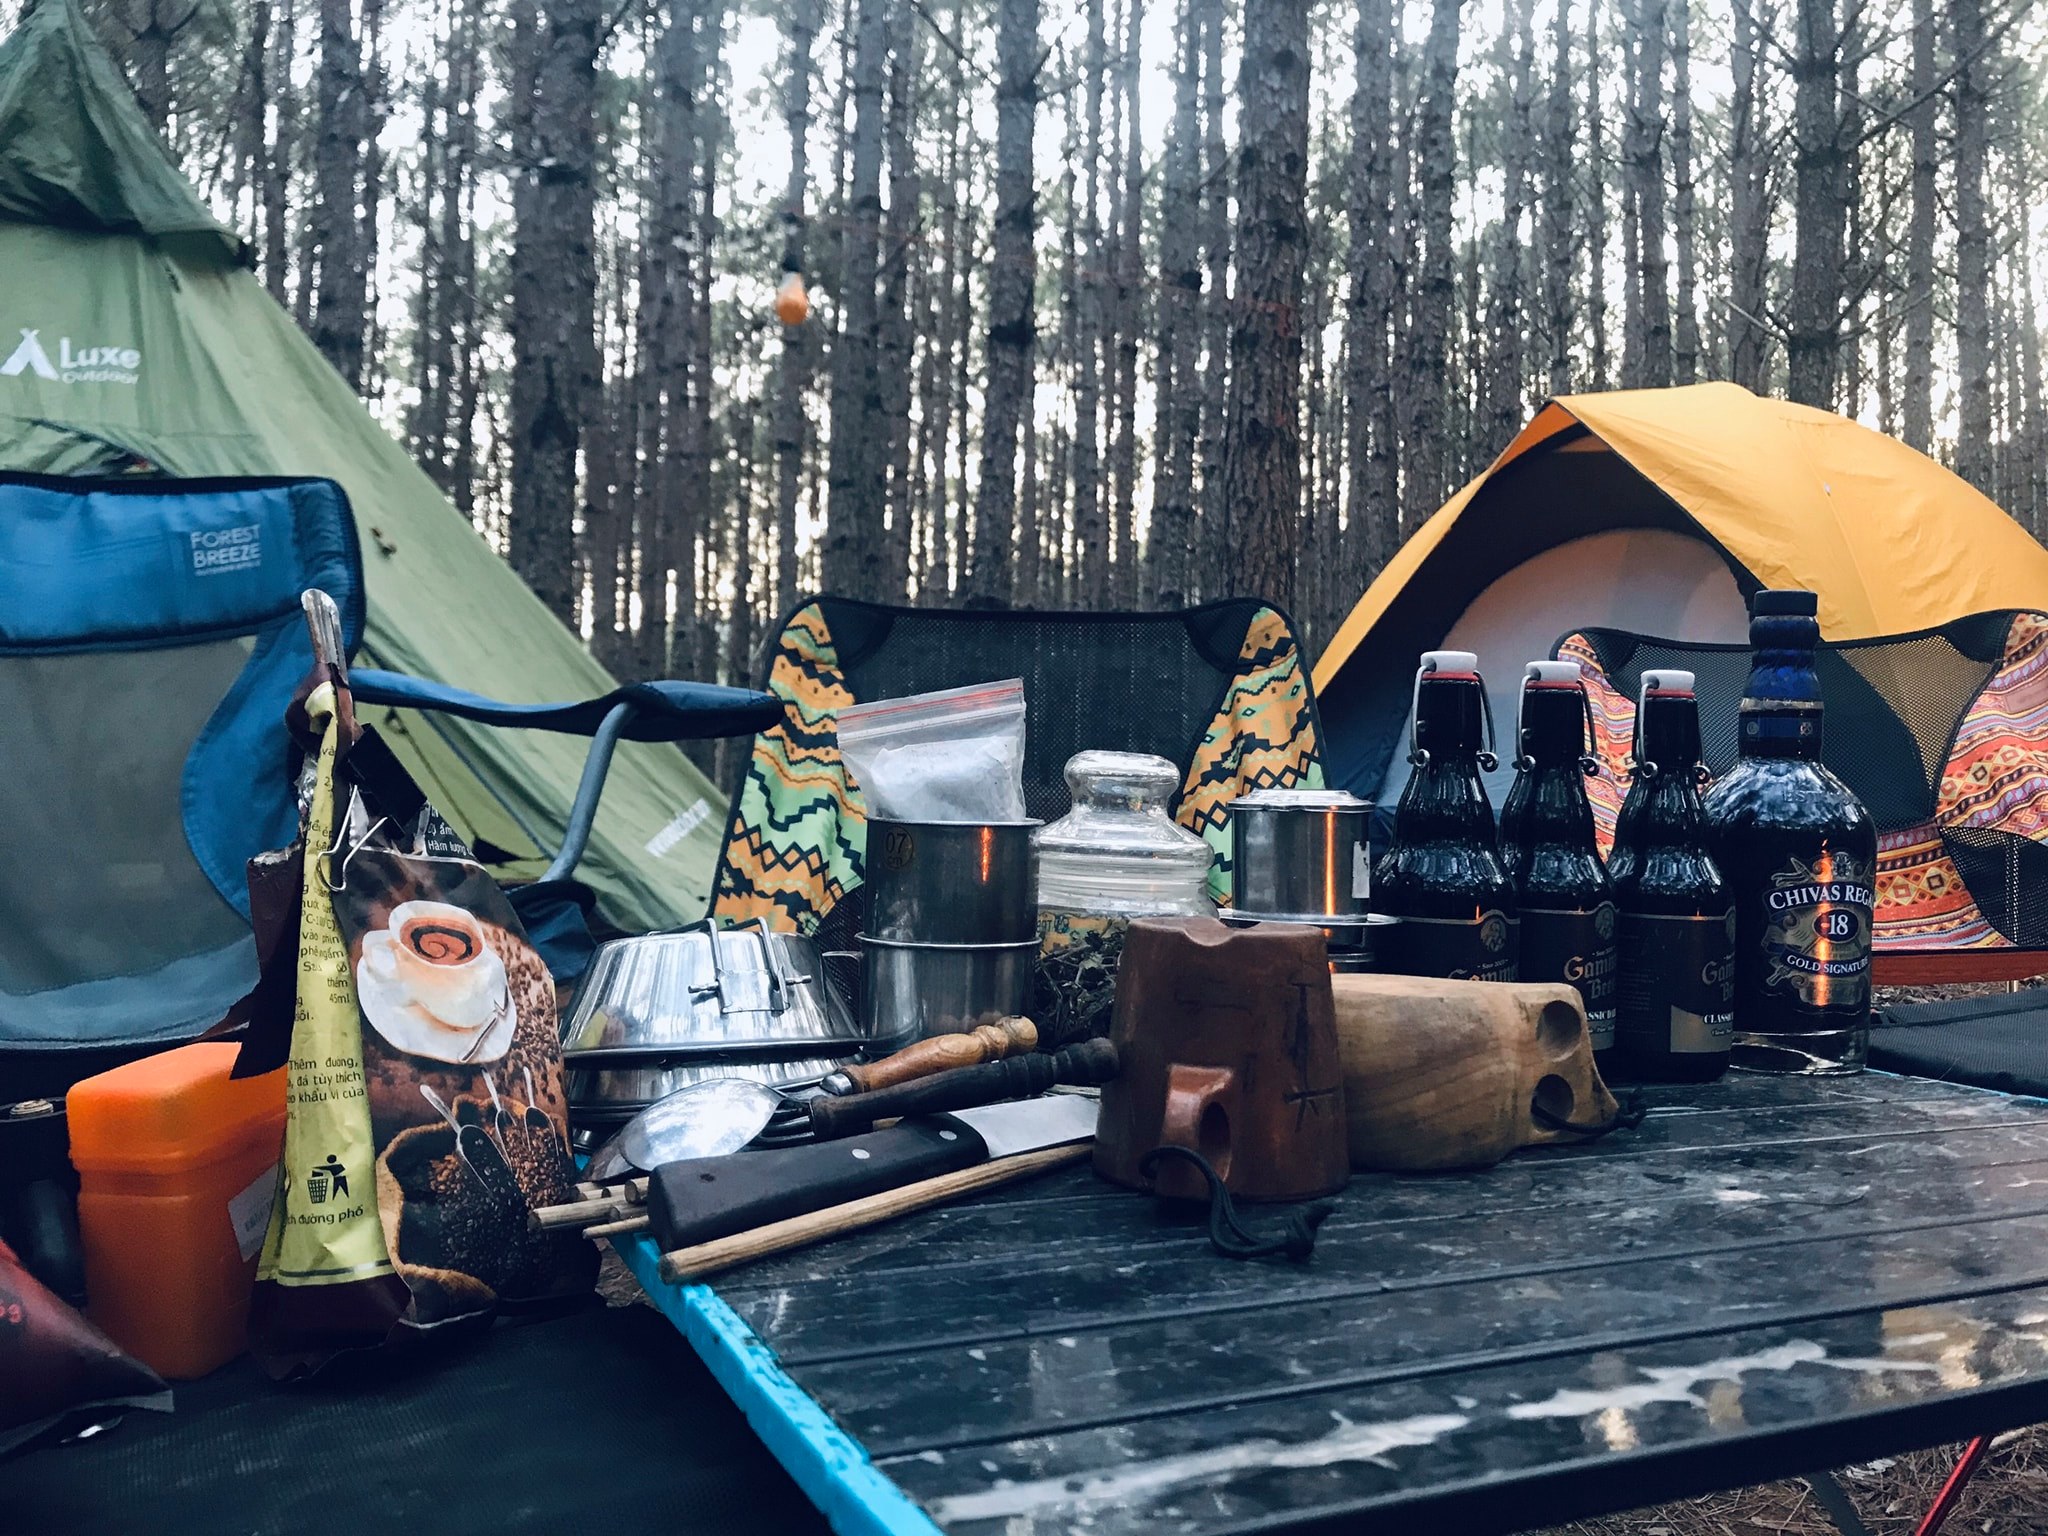 Đà Lạt Happy Camping-Đà Lạt